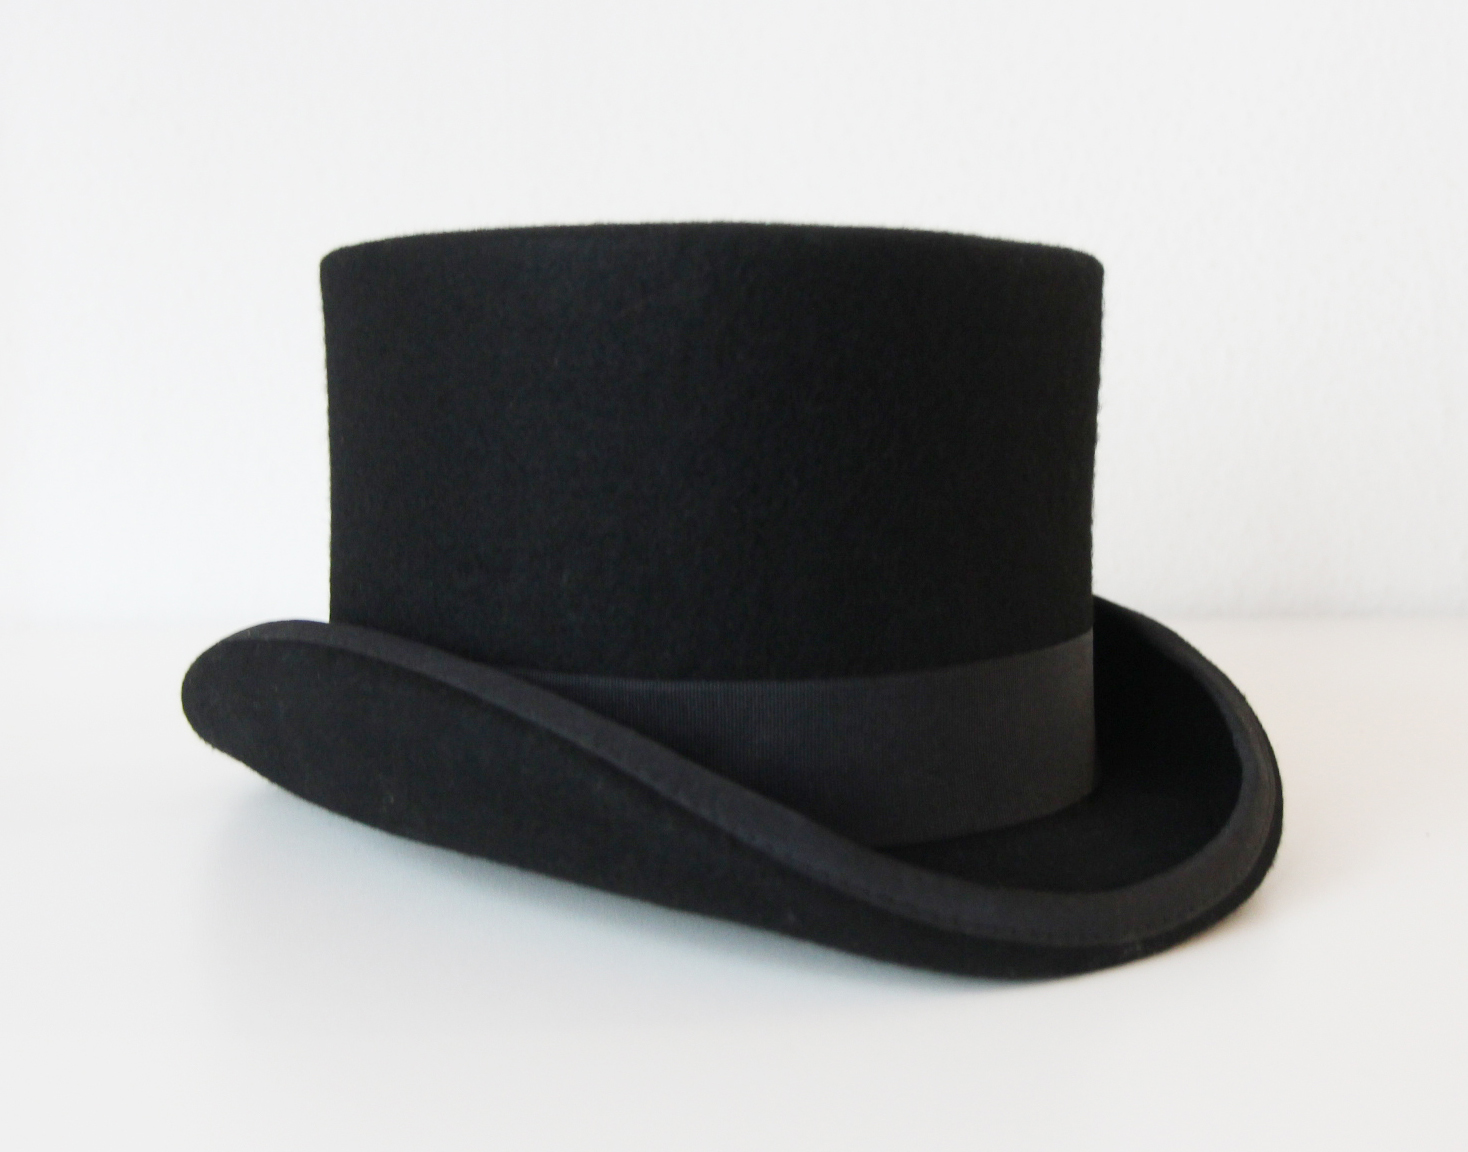 bevestigen Heer slachtoffer Luxe hoge hoed zwart tophat kopen? €34,95 - FeestinjeBeest.nl